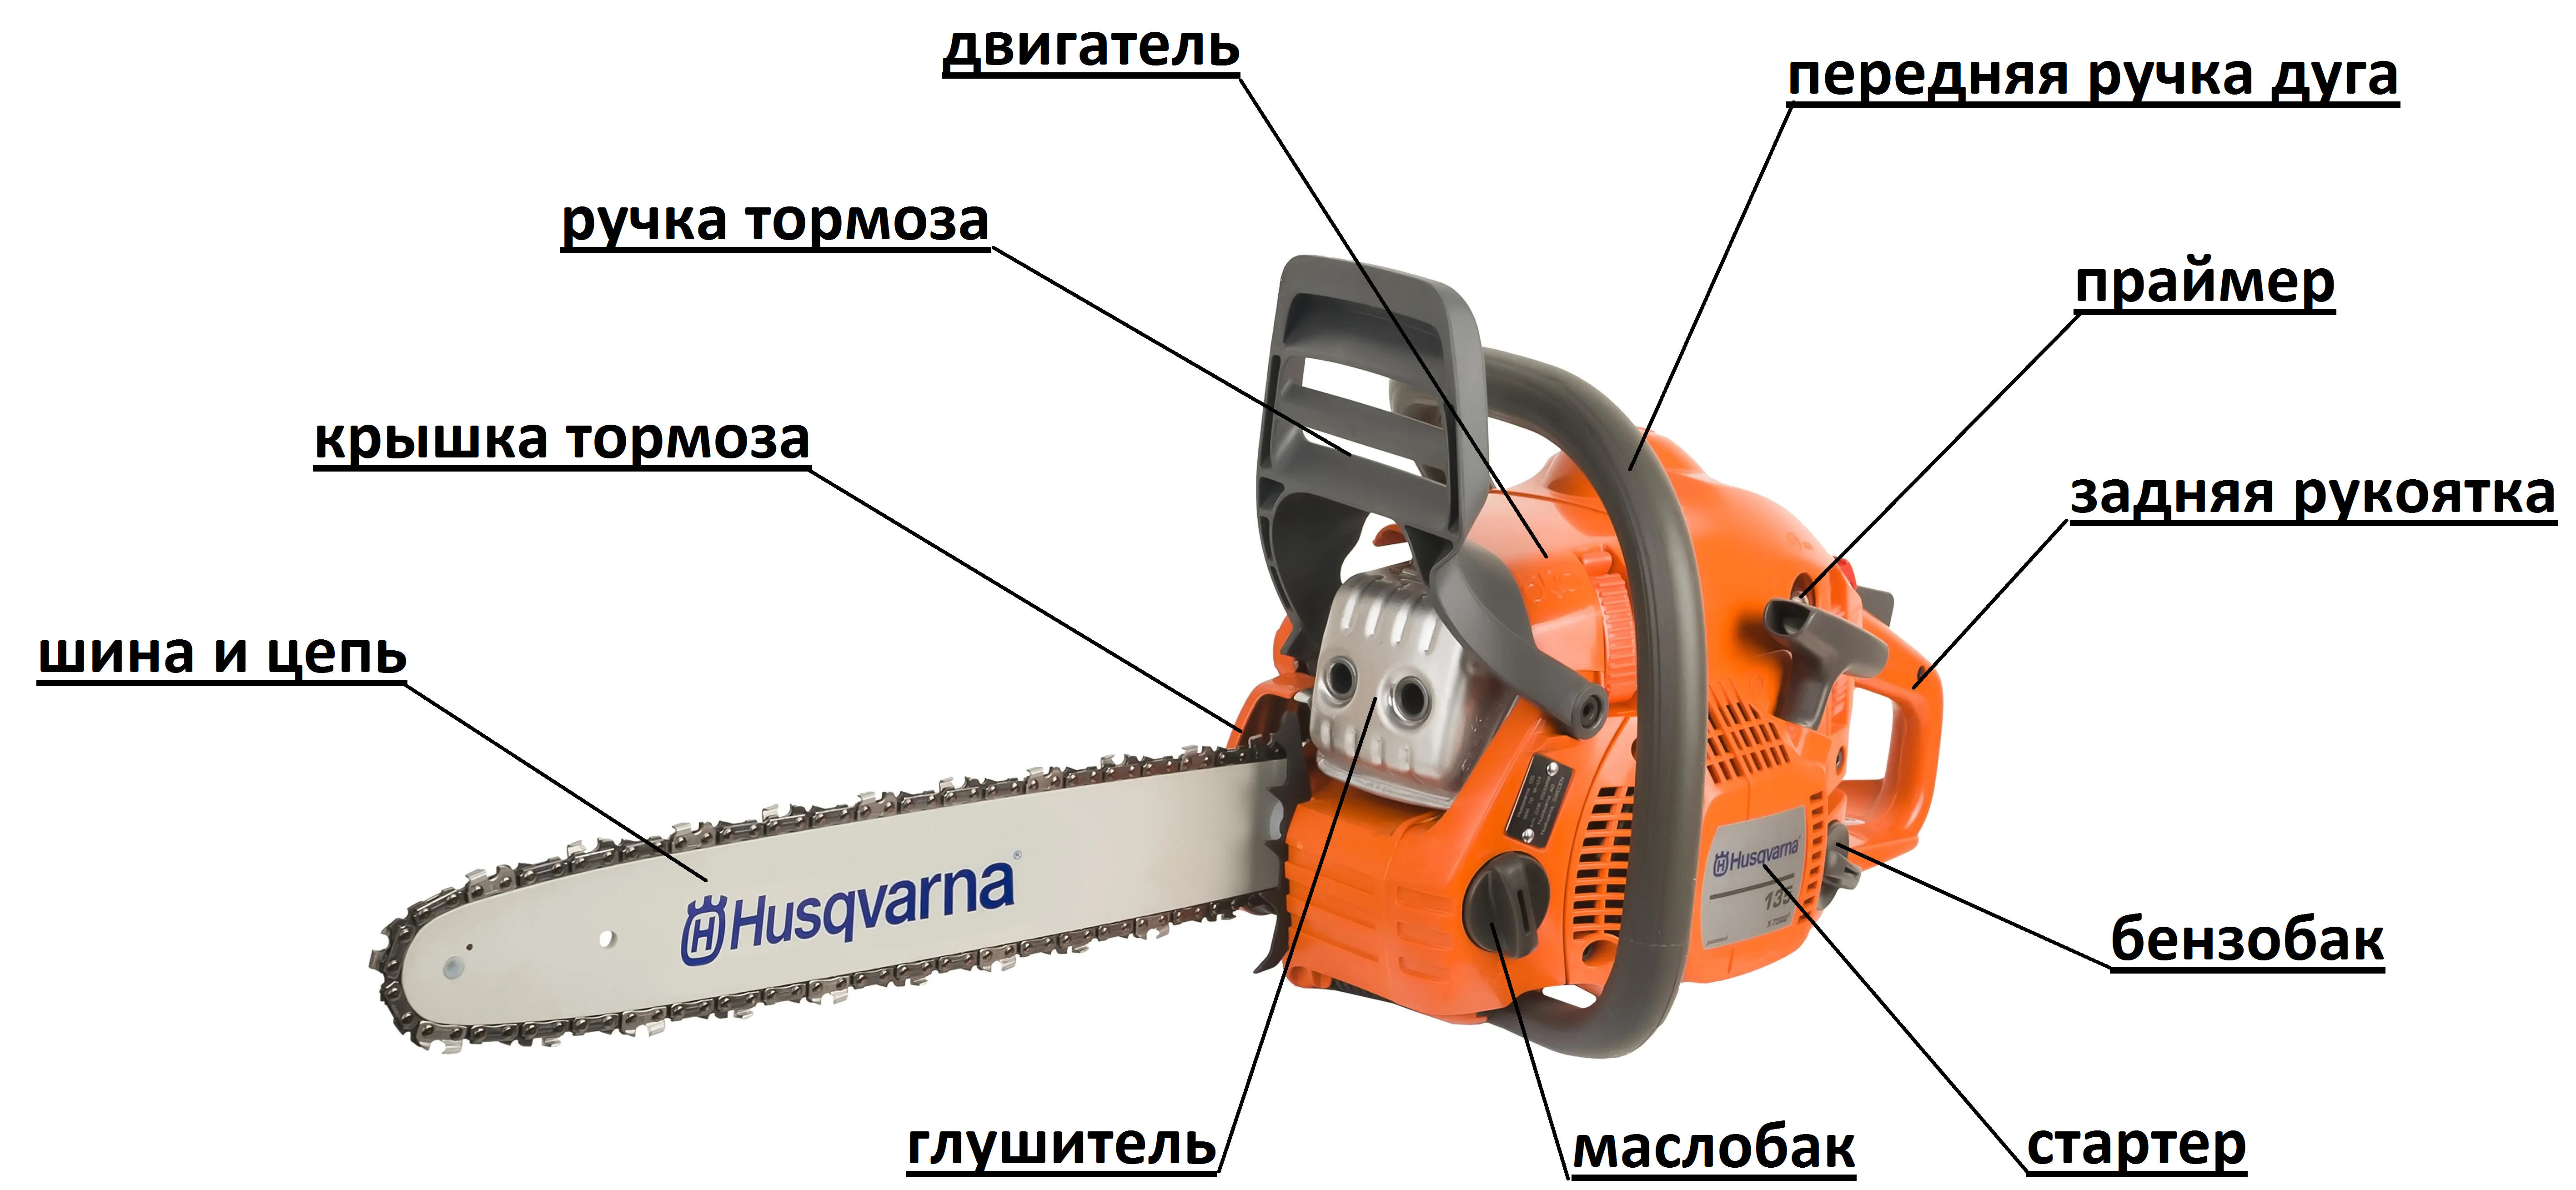 Бензопилы husqvarna (хускварна) — общие характеристики, ремонт, подделка и оригинал - строй-специалист.ру